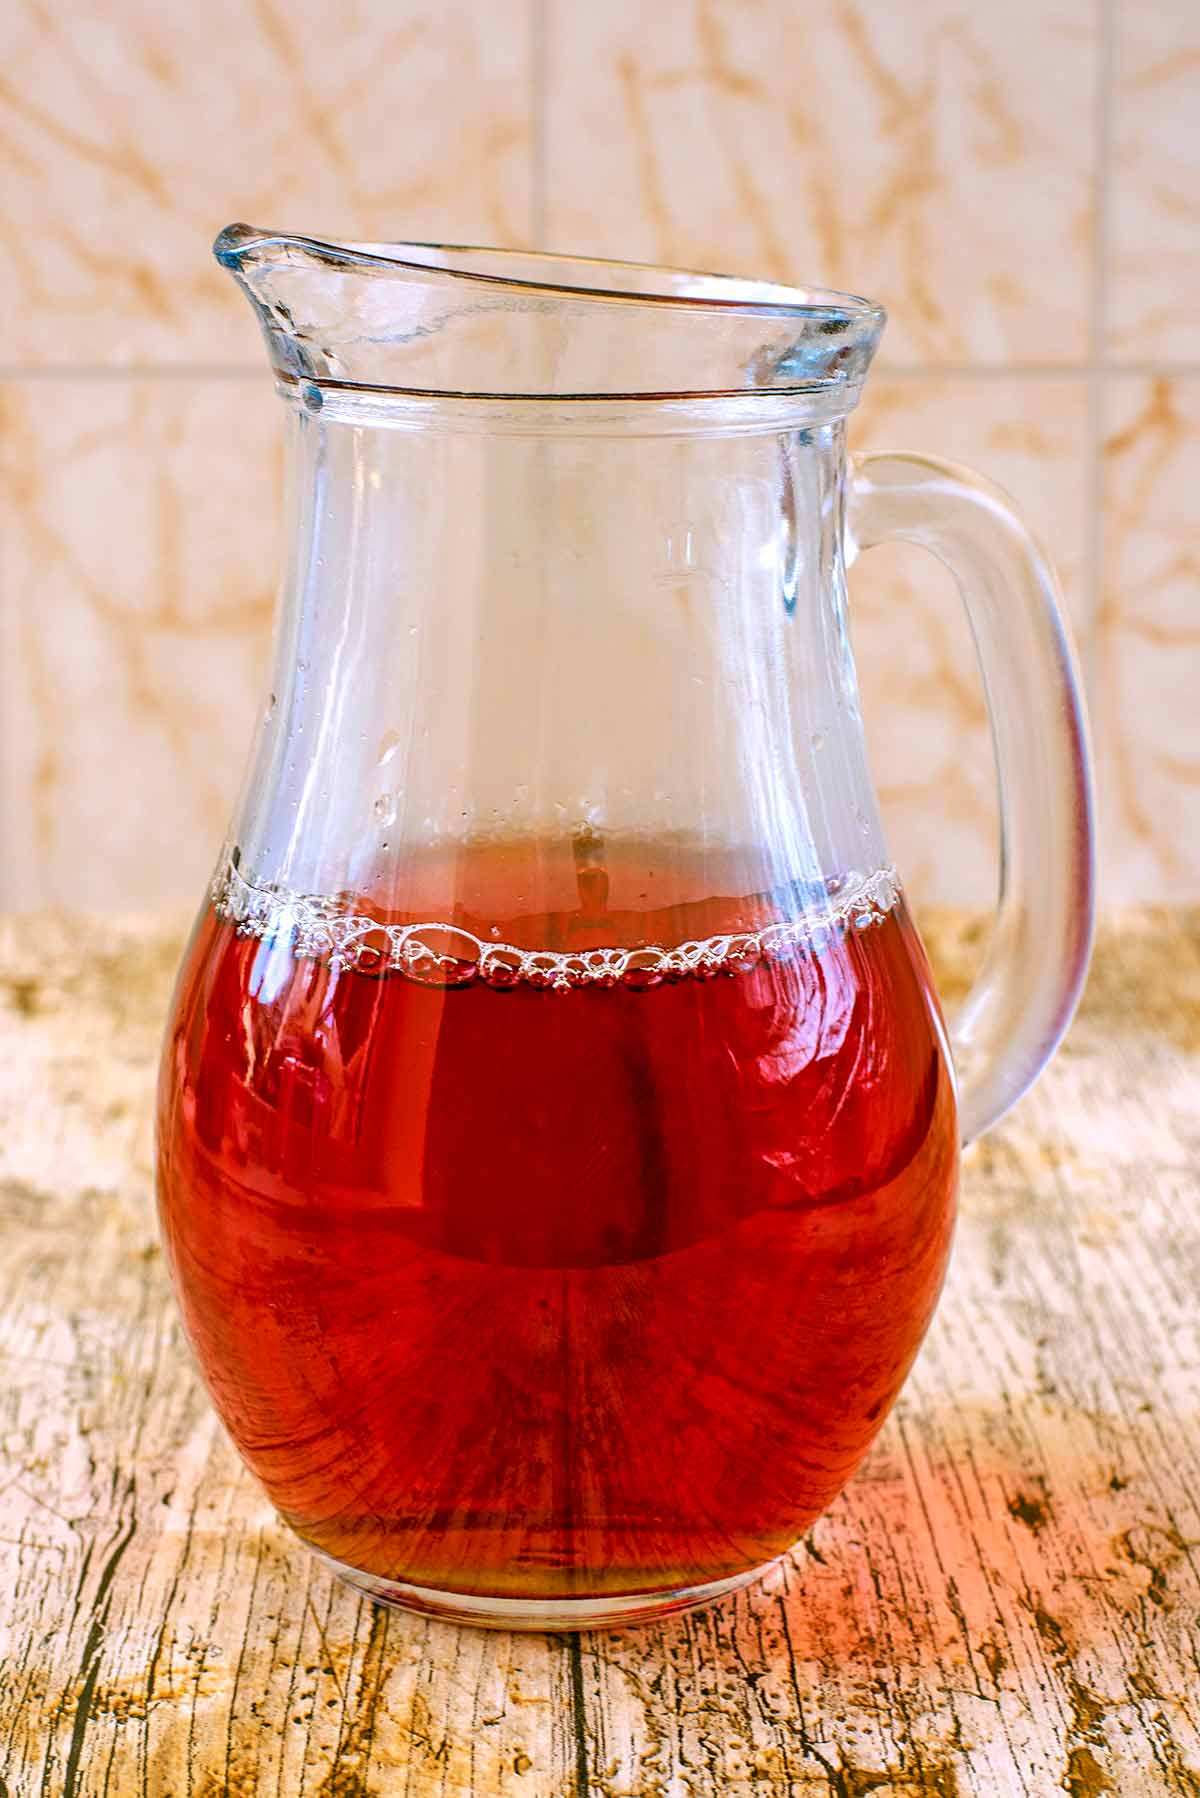 A glass jug half full of tea.